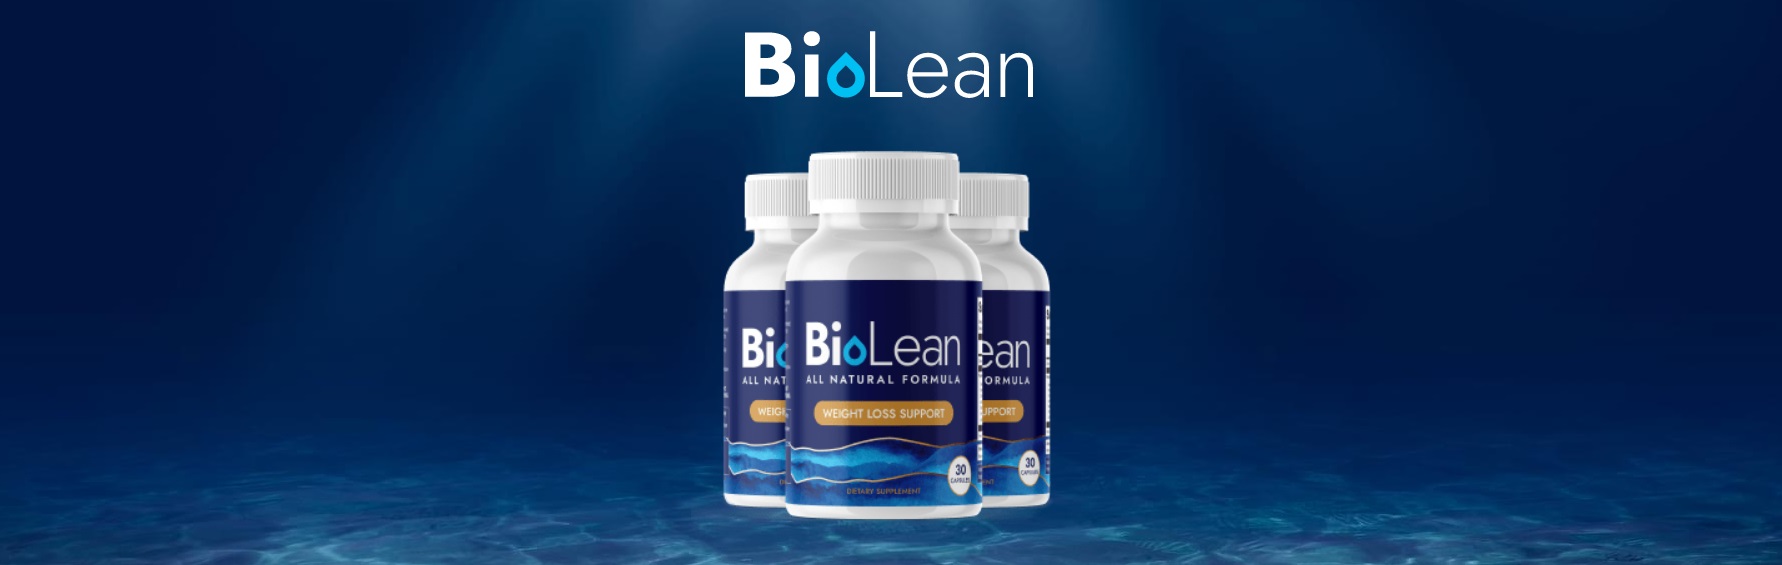 biolean supplement